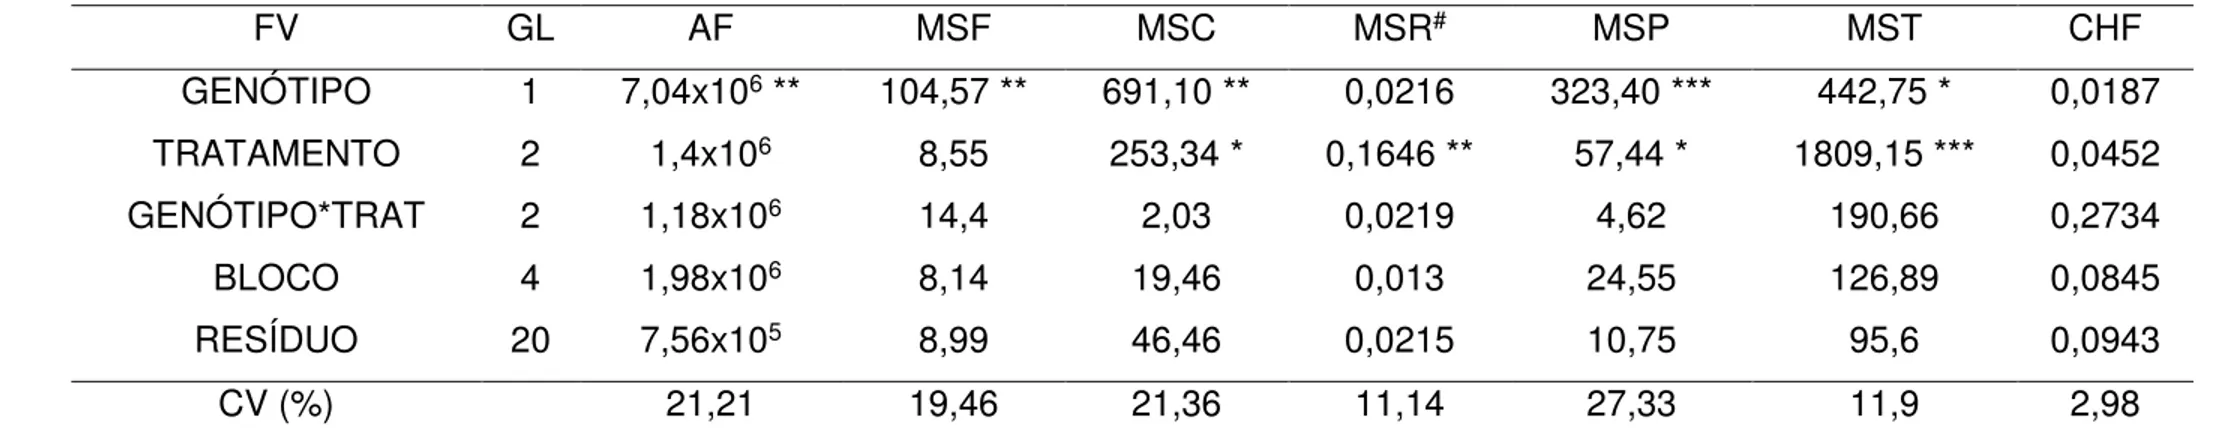 Tabela 3 - Valores de quadrado médio (QM) da área foliar (AF), massa seca foliar (MSF), massa seca do colmo (MSC), massa  seca  radicular  (MSR),  massa  seca  da  panícula  (MSP),  massa  seca  total  (MST)  e  conteúdo  hídrico  foliar  (CHF)  dos  genót